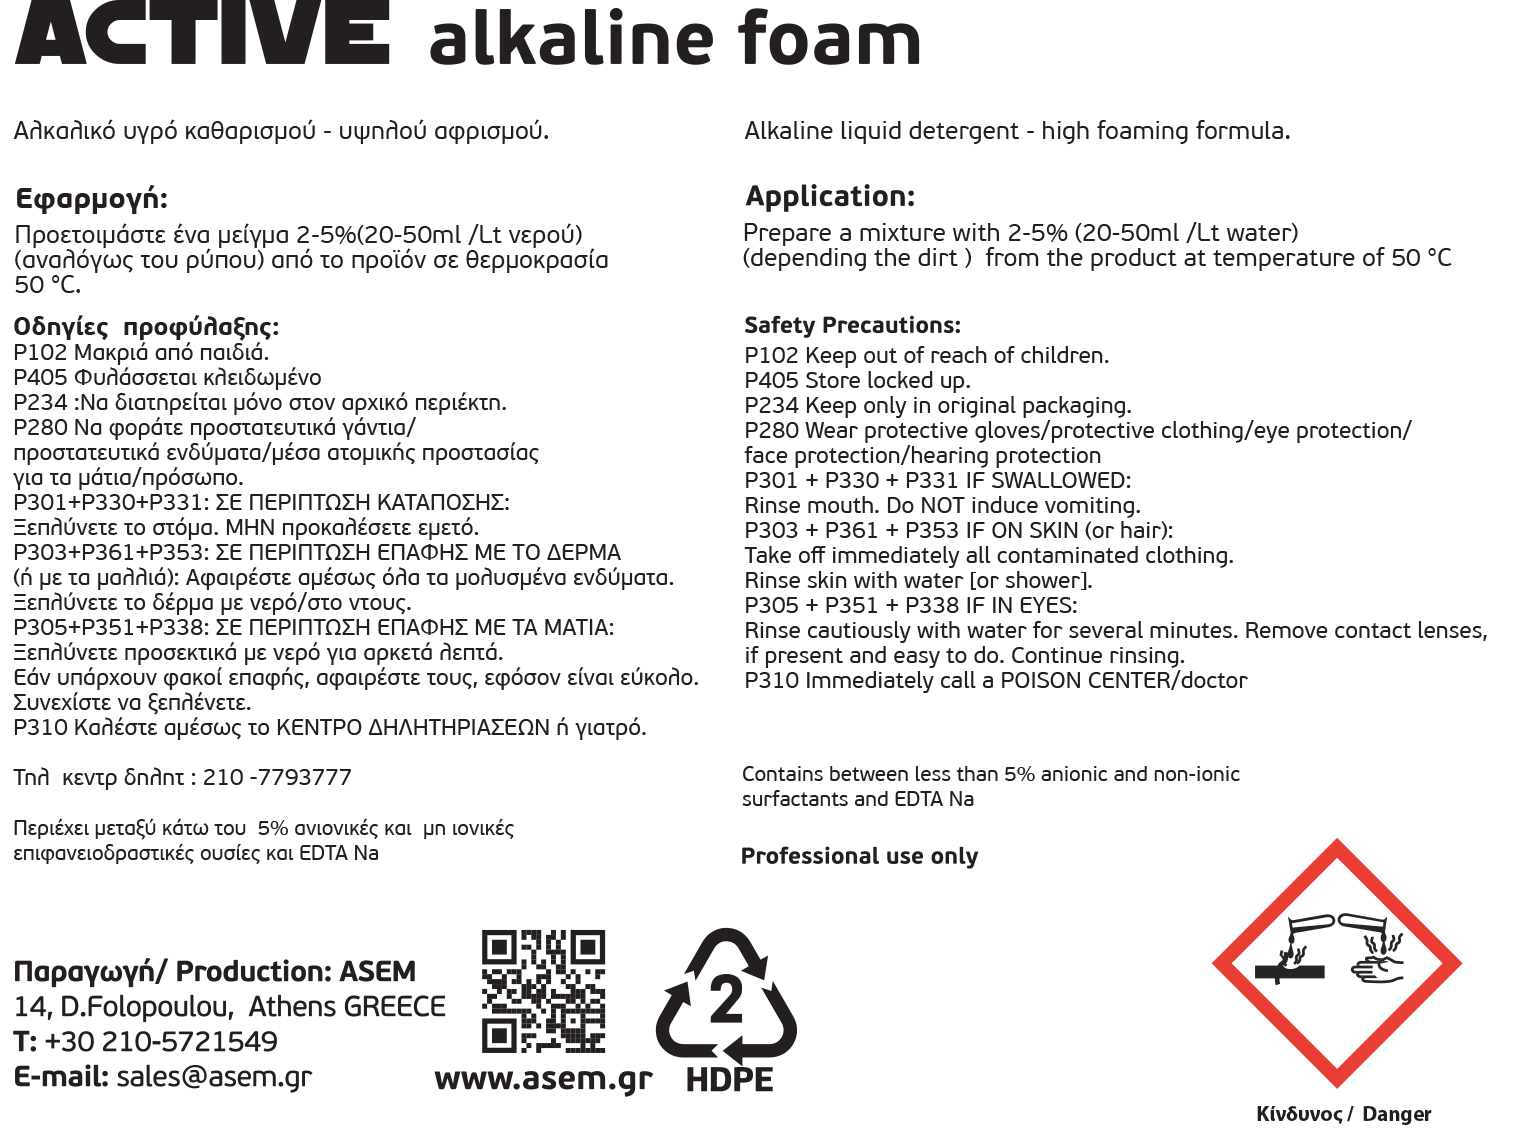 ACTIVE Alkaline Foam Οπίσθια (134 X 100)